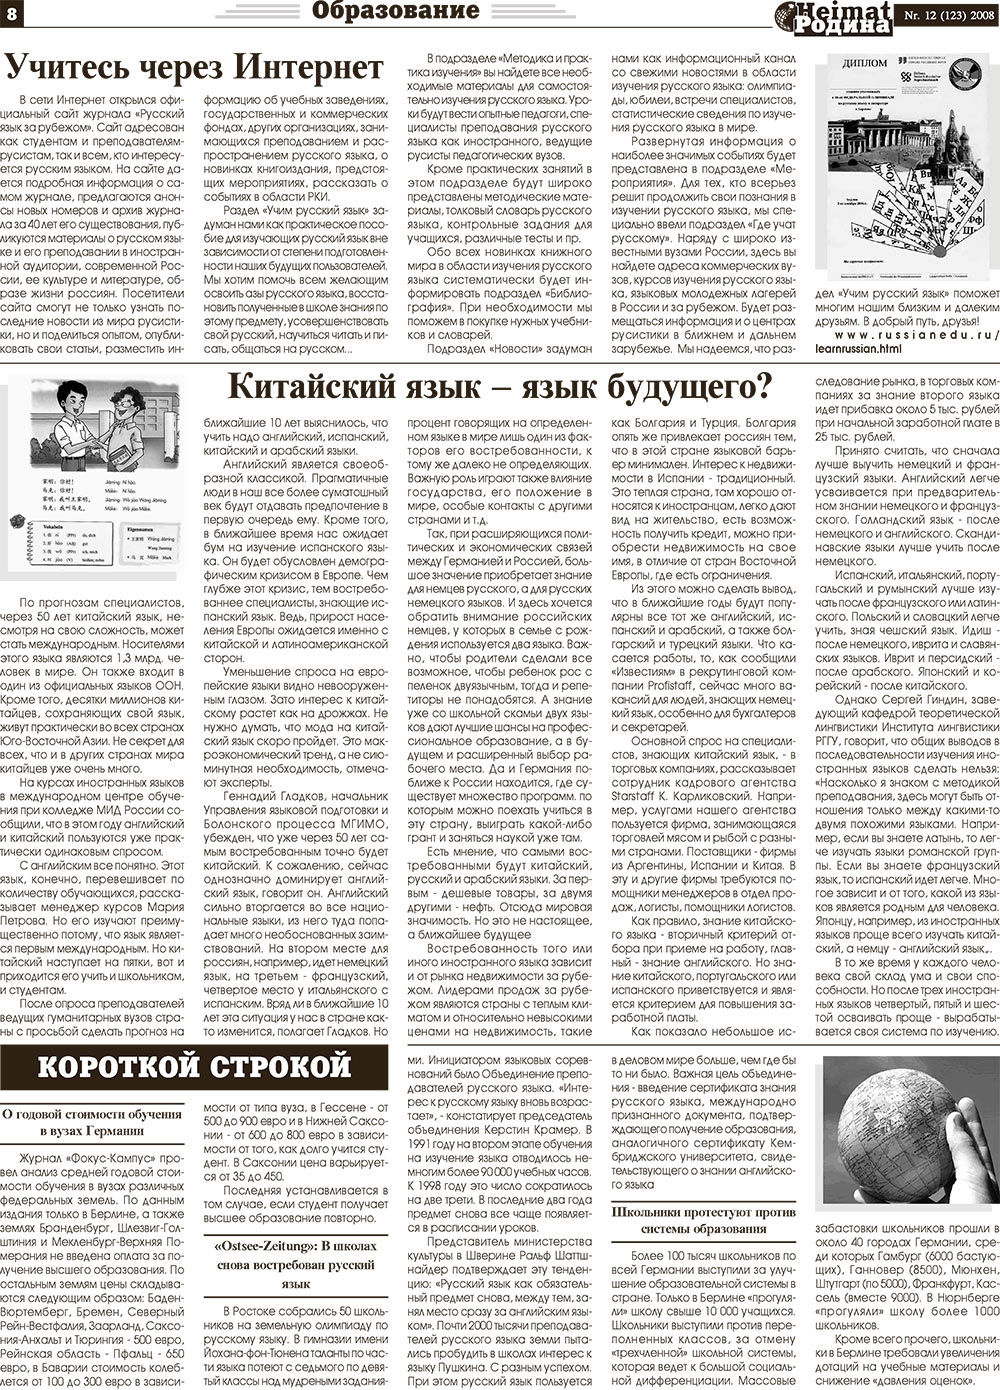 Heimat-Родина (газета). 2008 год, номер 12, стр. 8